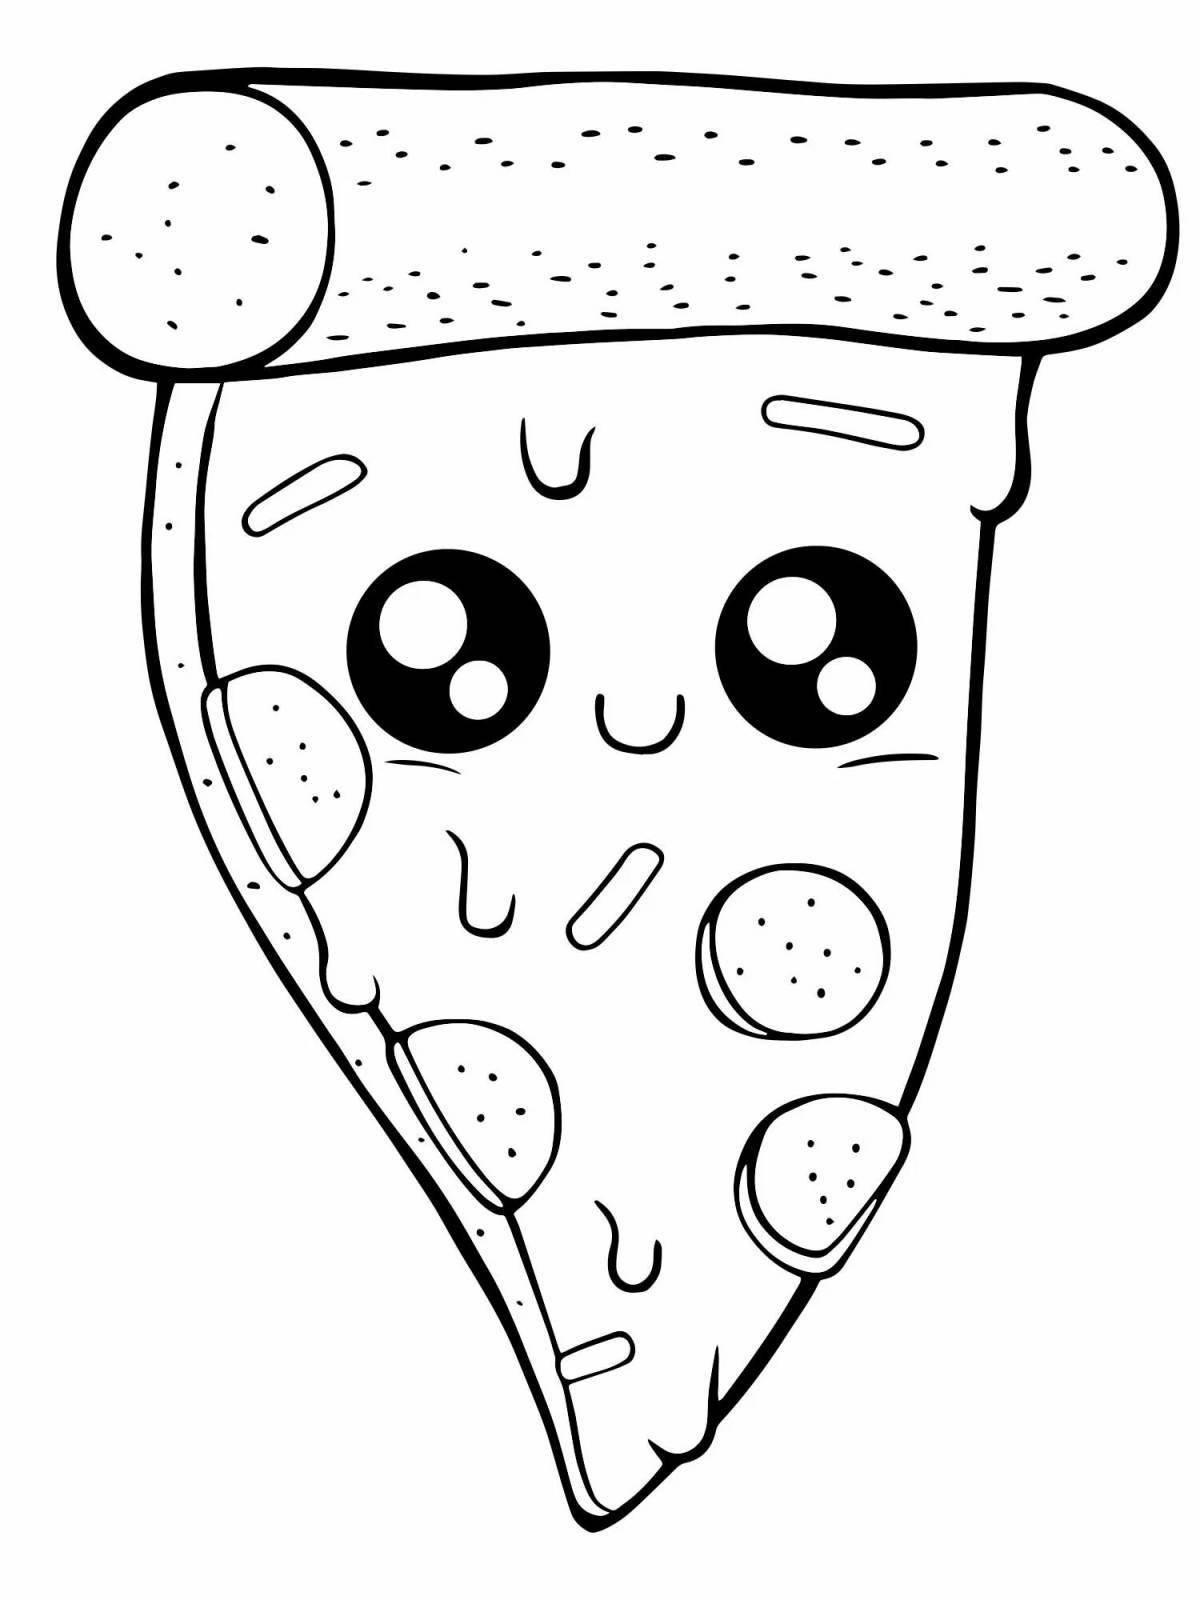 Краткая страница раскраски пиццы